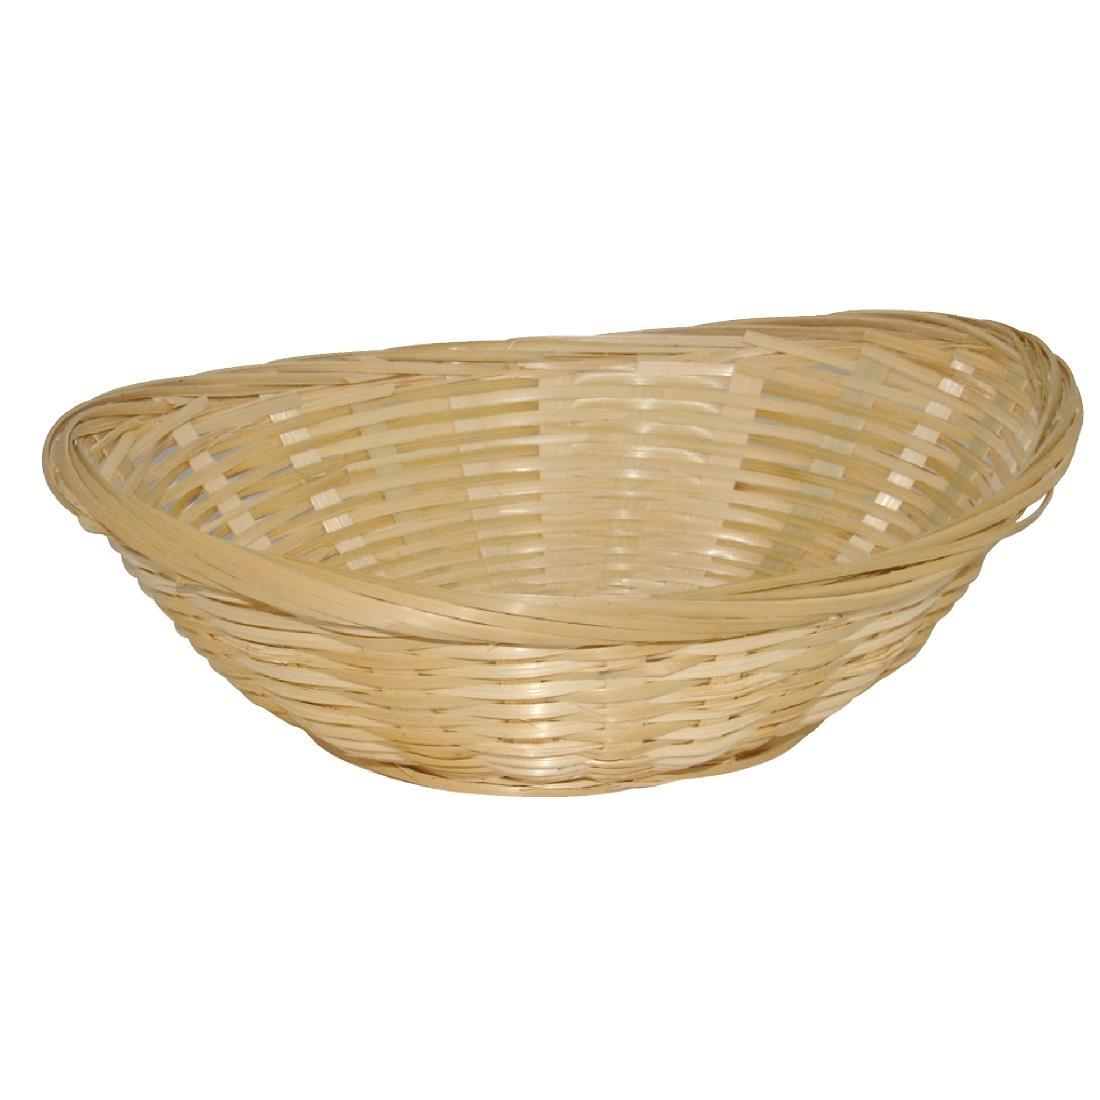 Wicker Oval Bread Basket (Pack of 6) - Y571  - 1